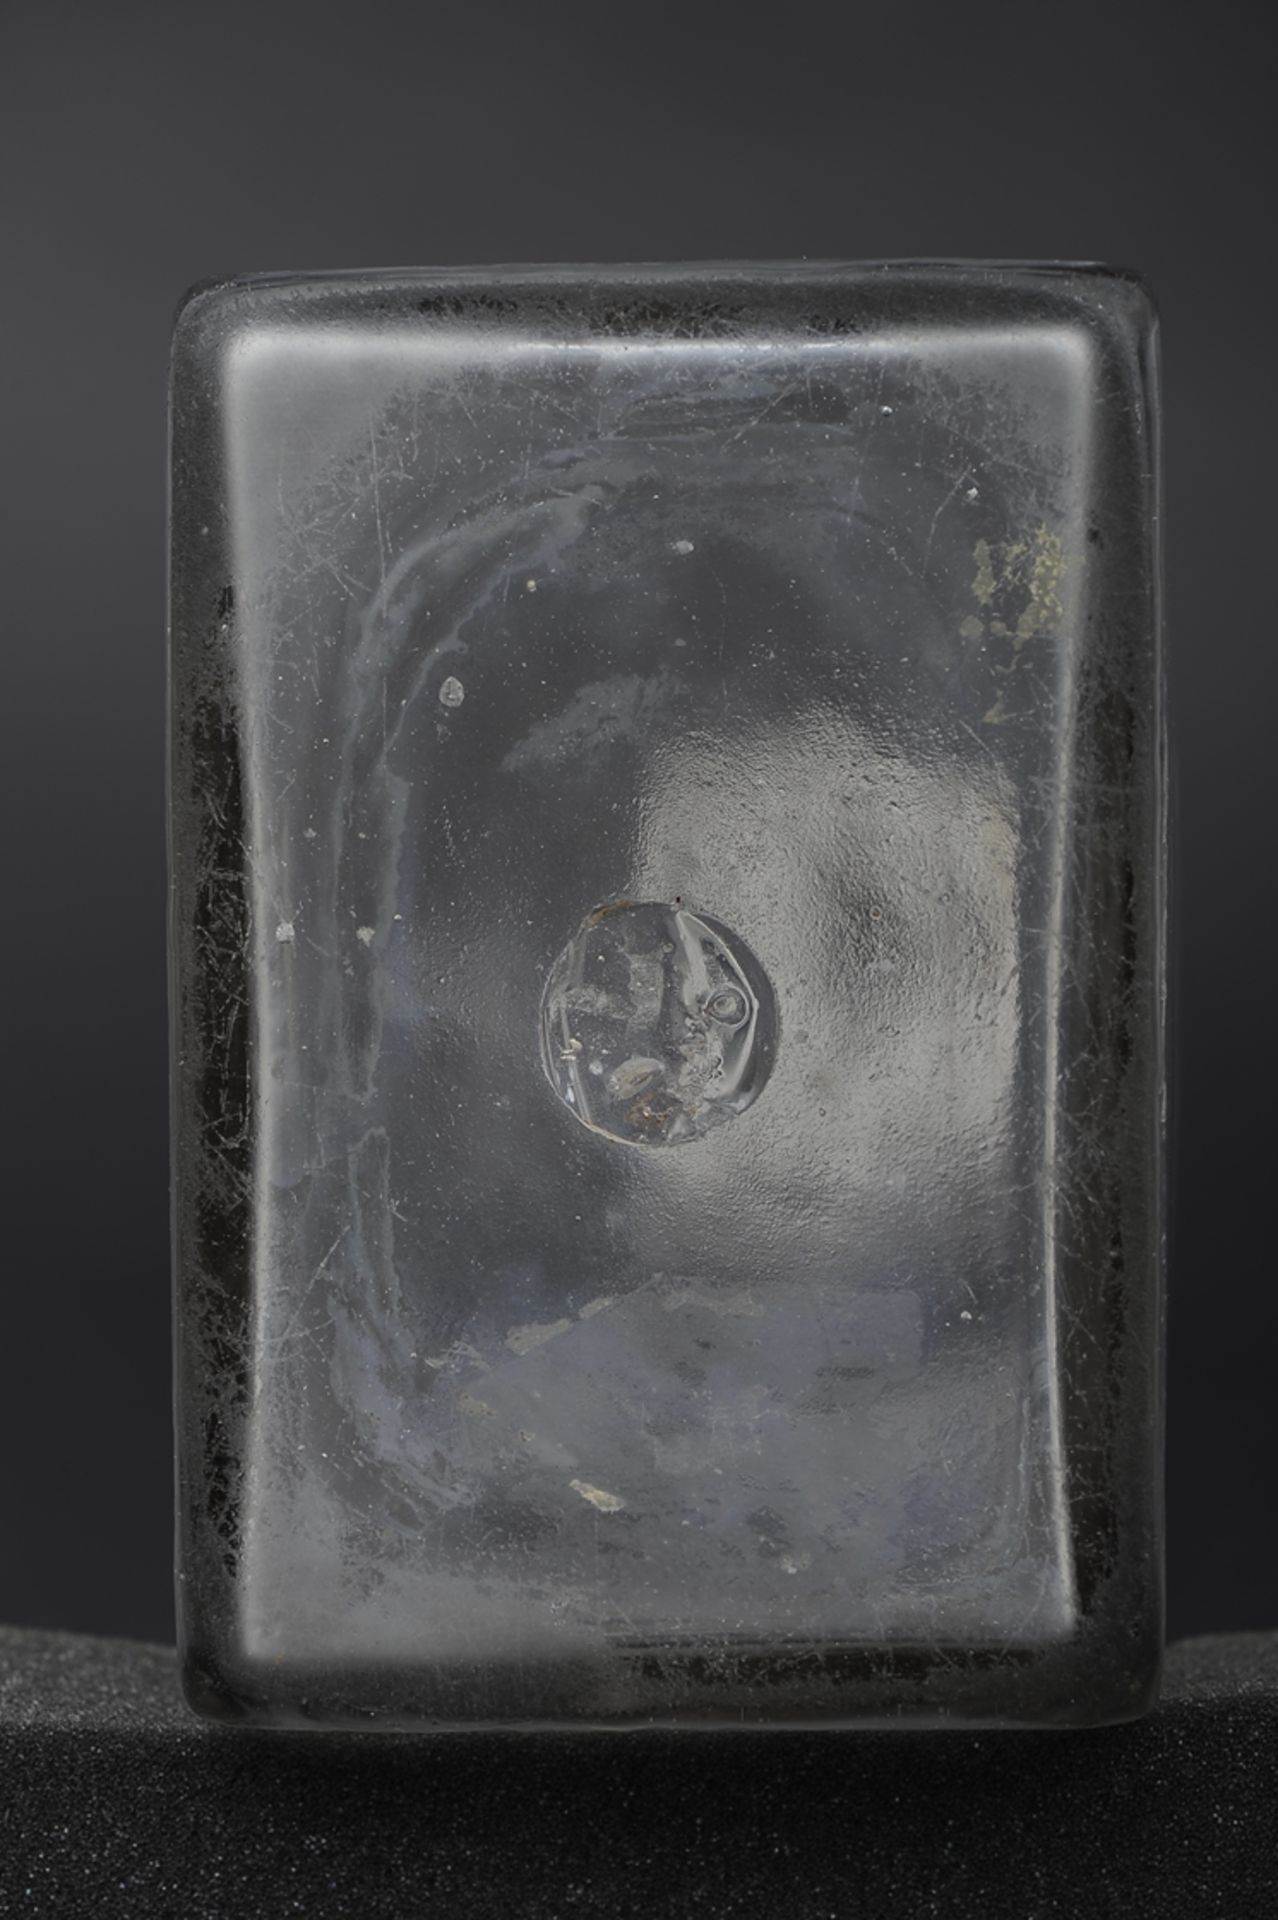 Antike Branntweinflasche, "1826" datiert, farbloses Klarglas mit allseitigen Ätzdekoren, mundgeblas - Image 7 of 7